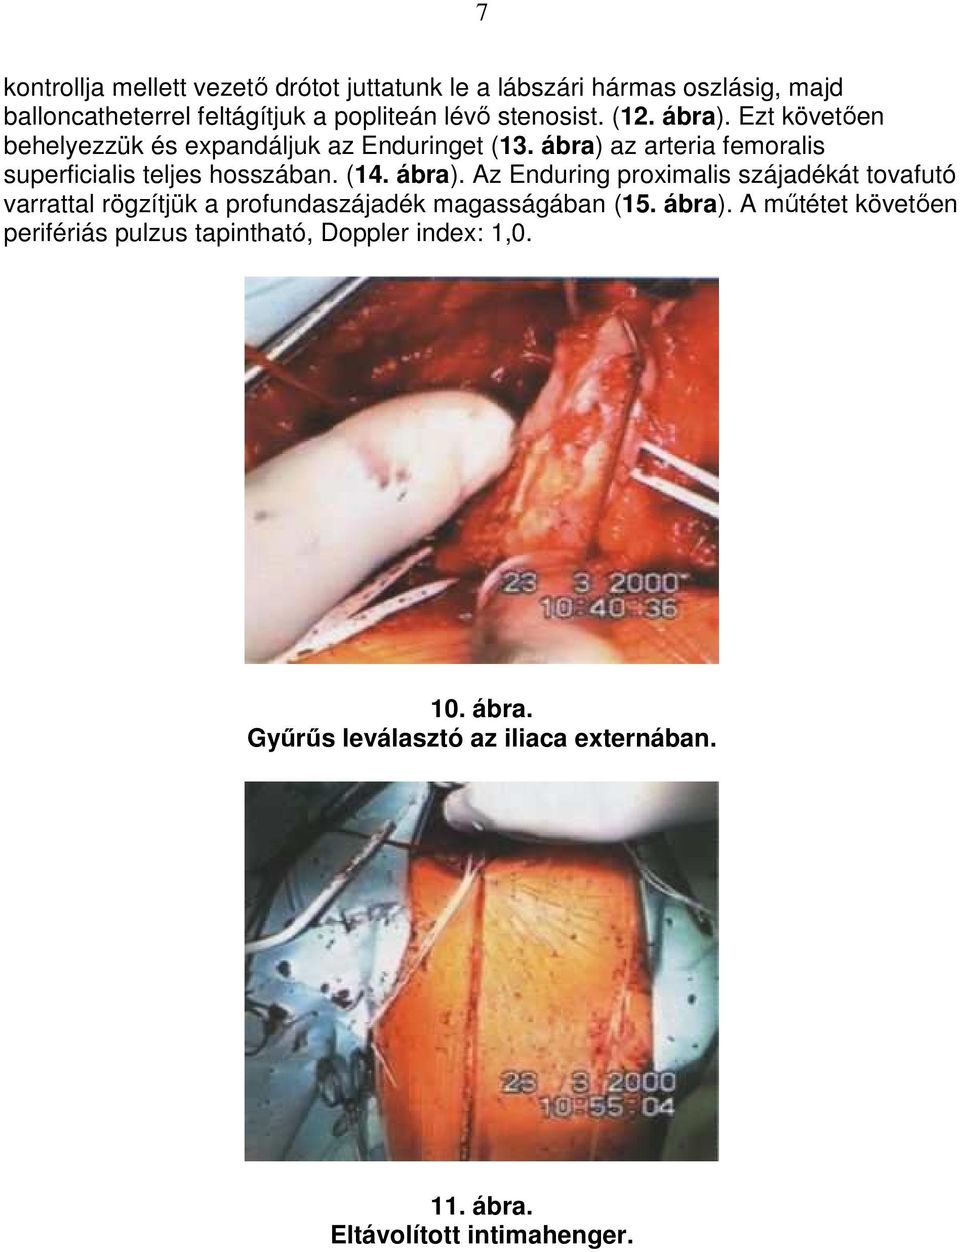 ábra) az arteria femoralis superficialis teljes hosszában. (14. ábra).